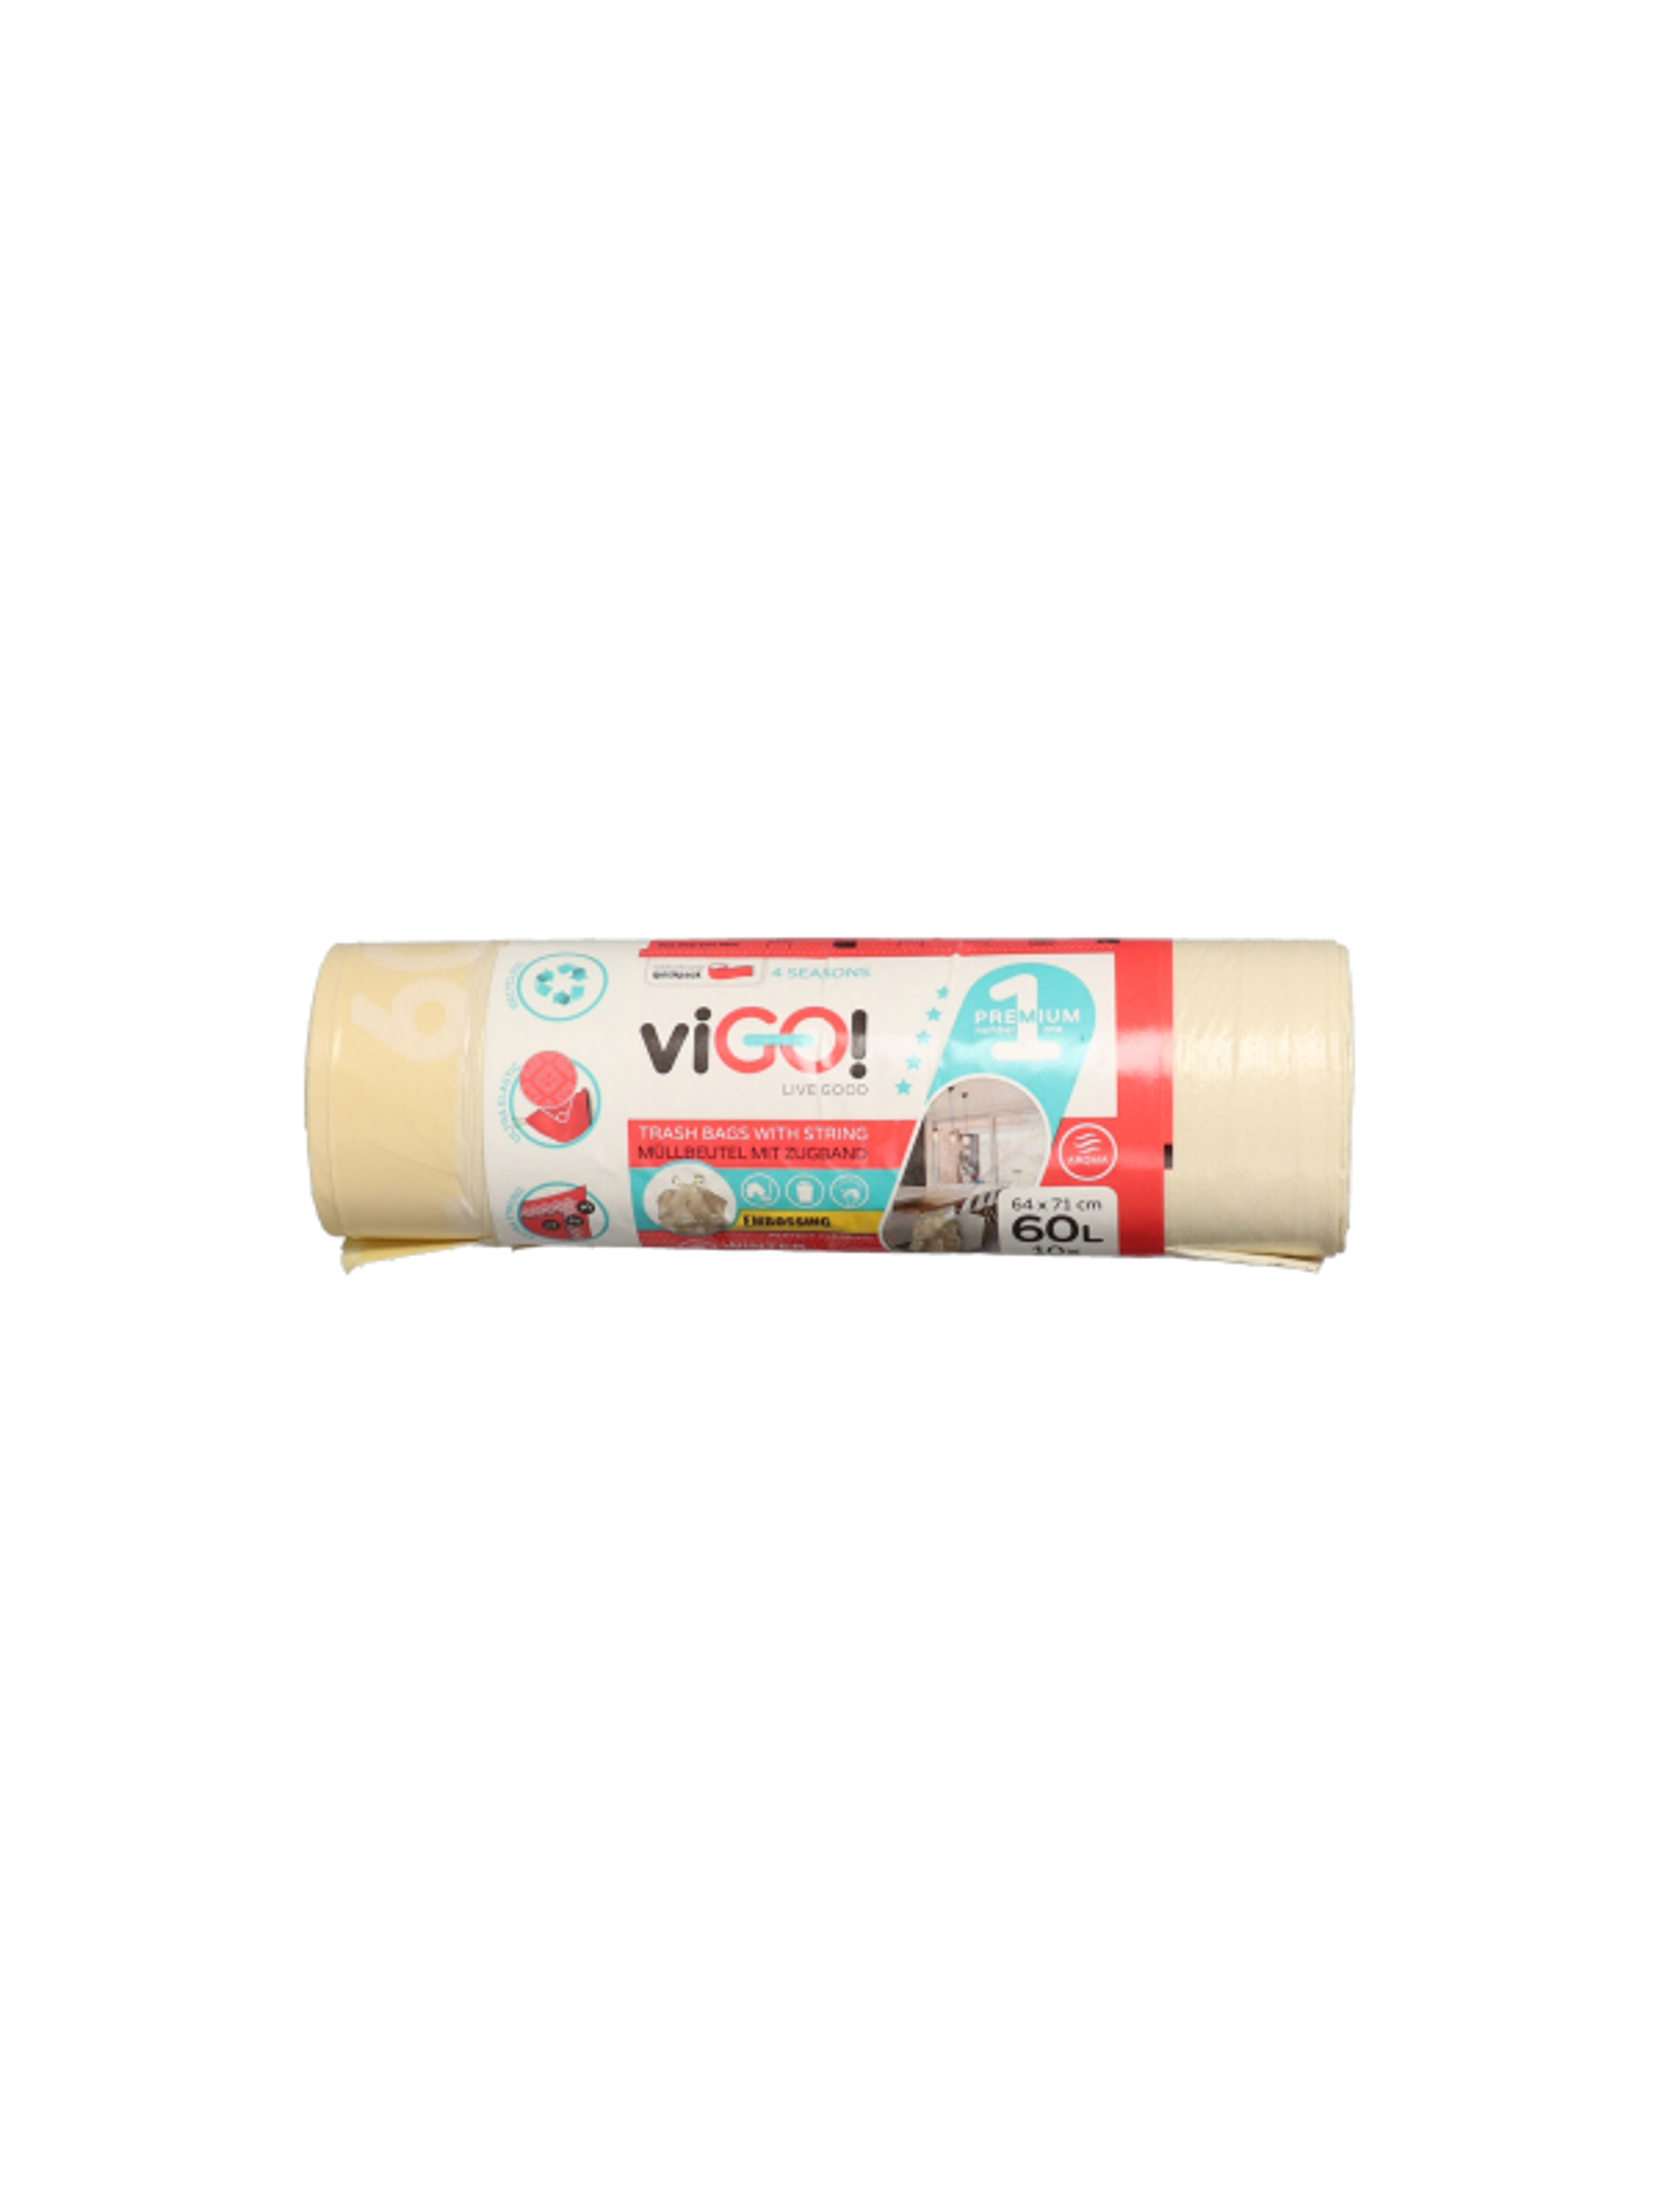 Vigo szemeteszsák,zárószalaggal, vanília illattal, 60 L - 10 db